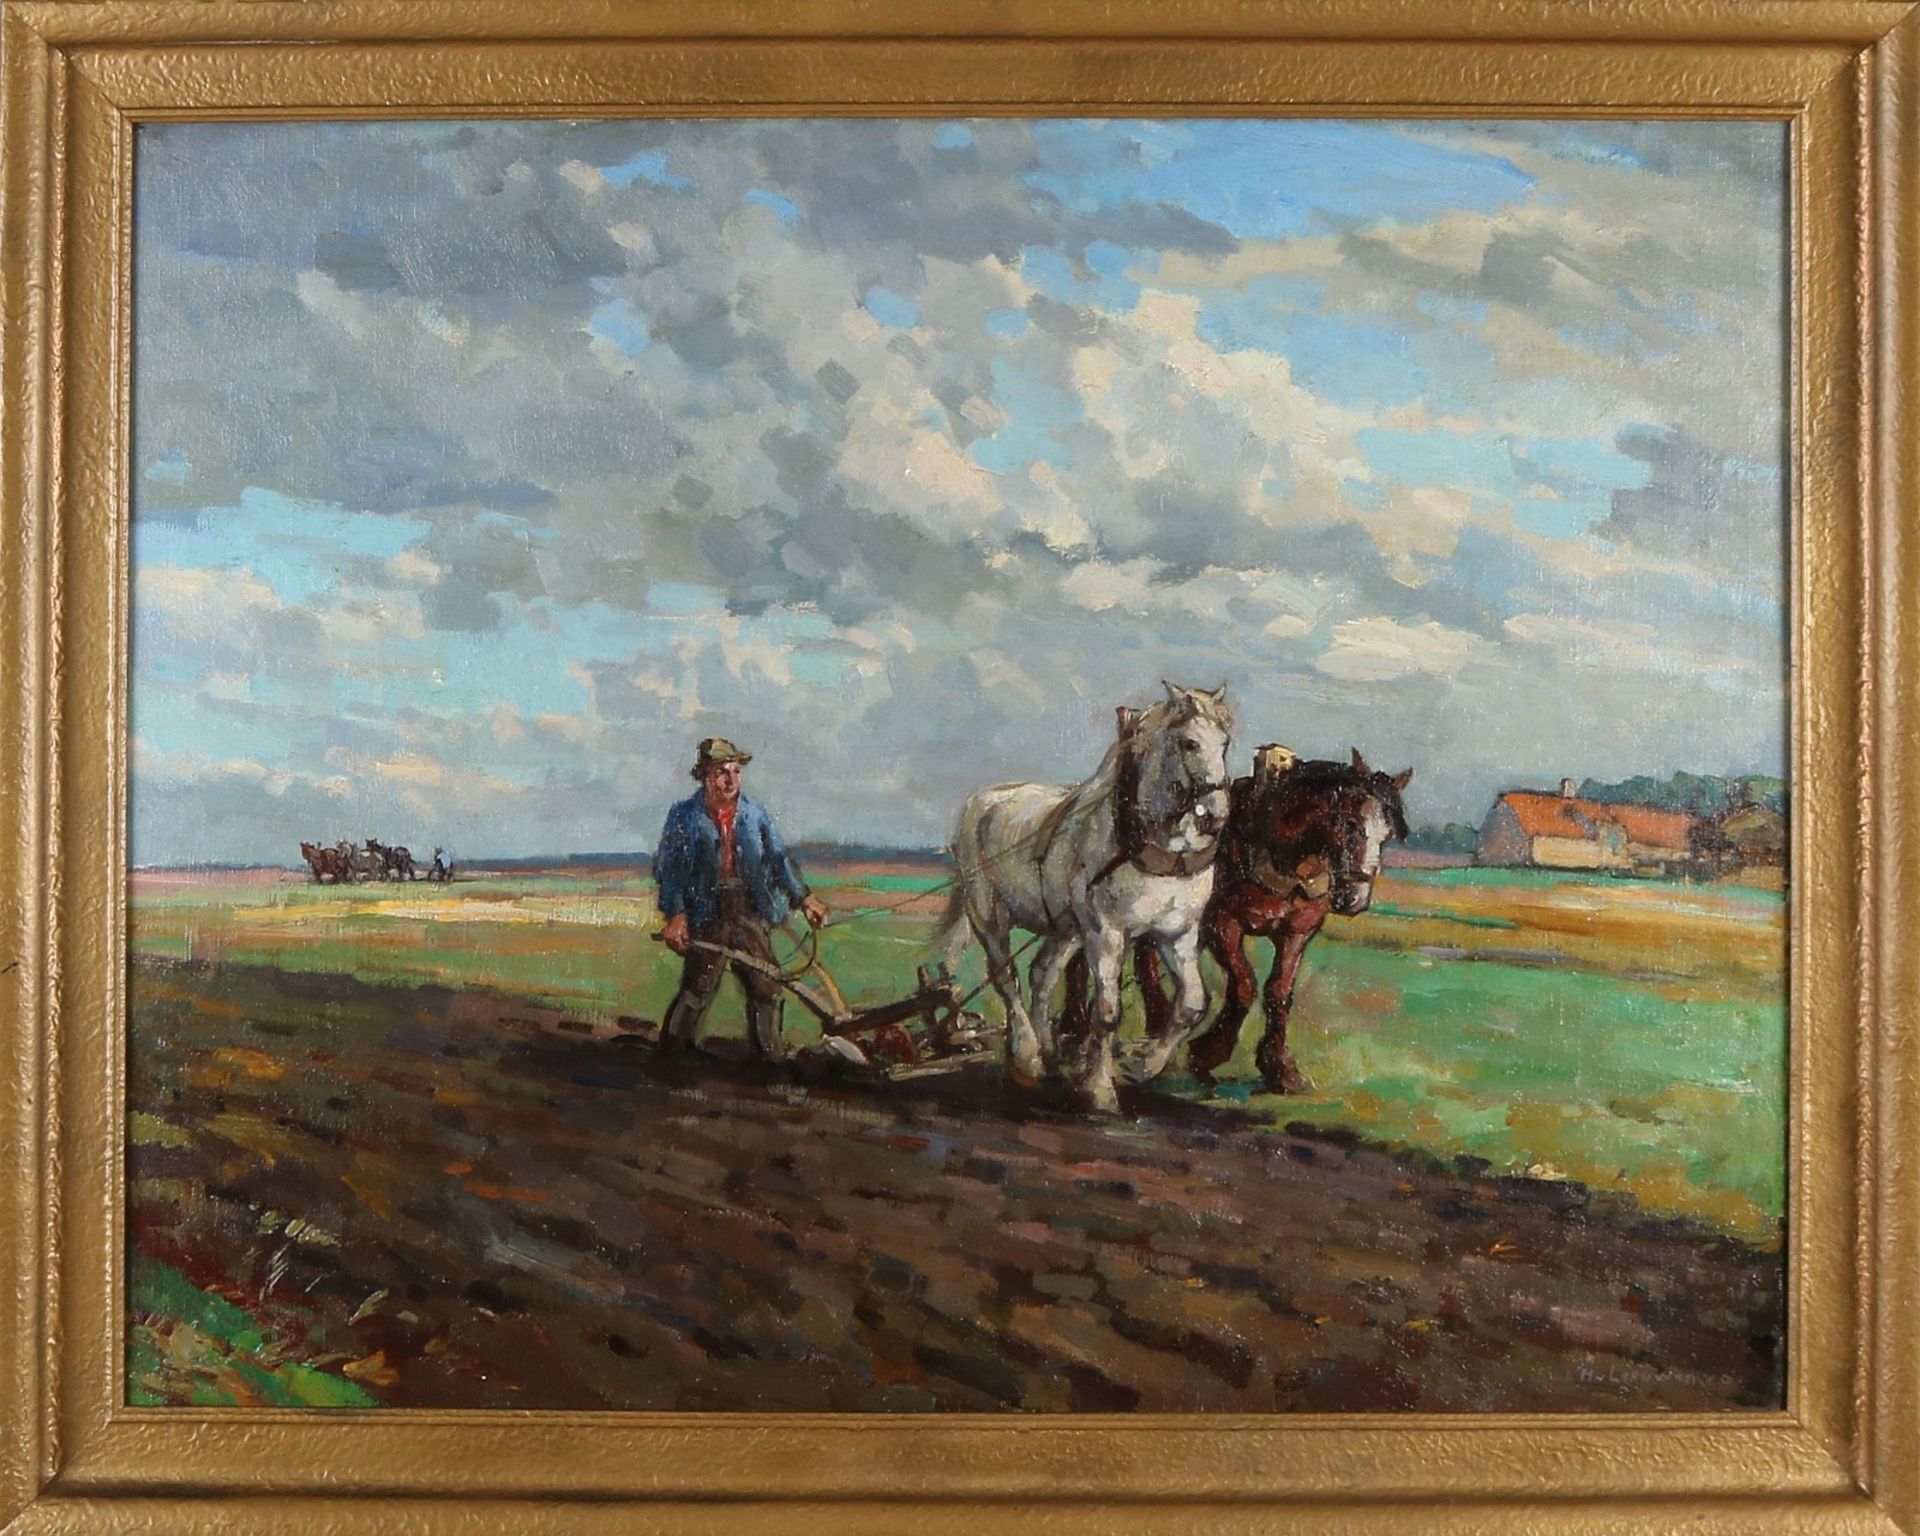 H. van Leeuwen von Oudewater. 1890 - 1972. Landschaft mit Pflugbauern. Öl auf Leinen. Abmessung